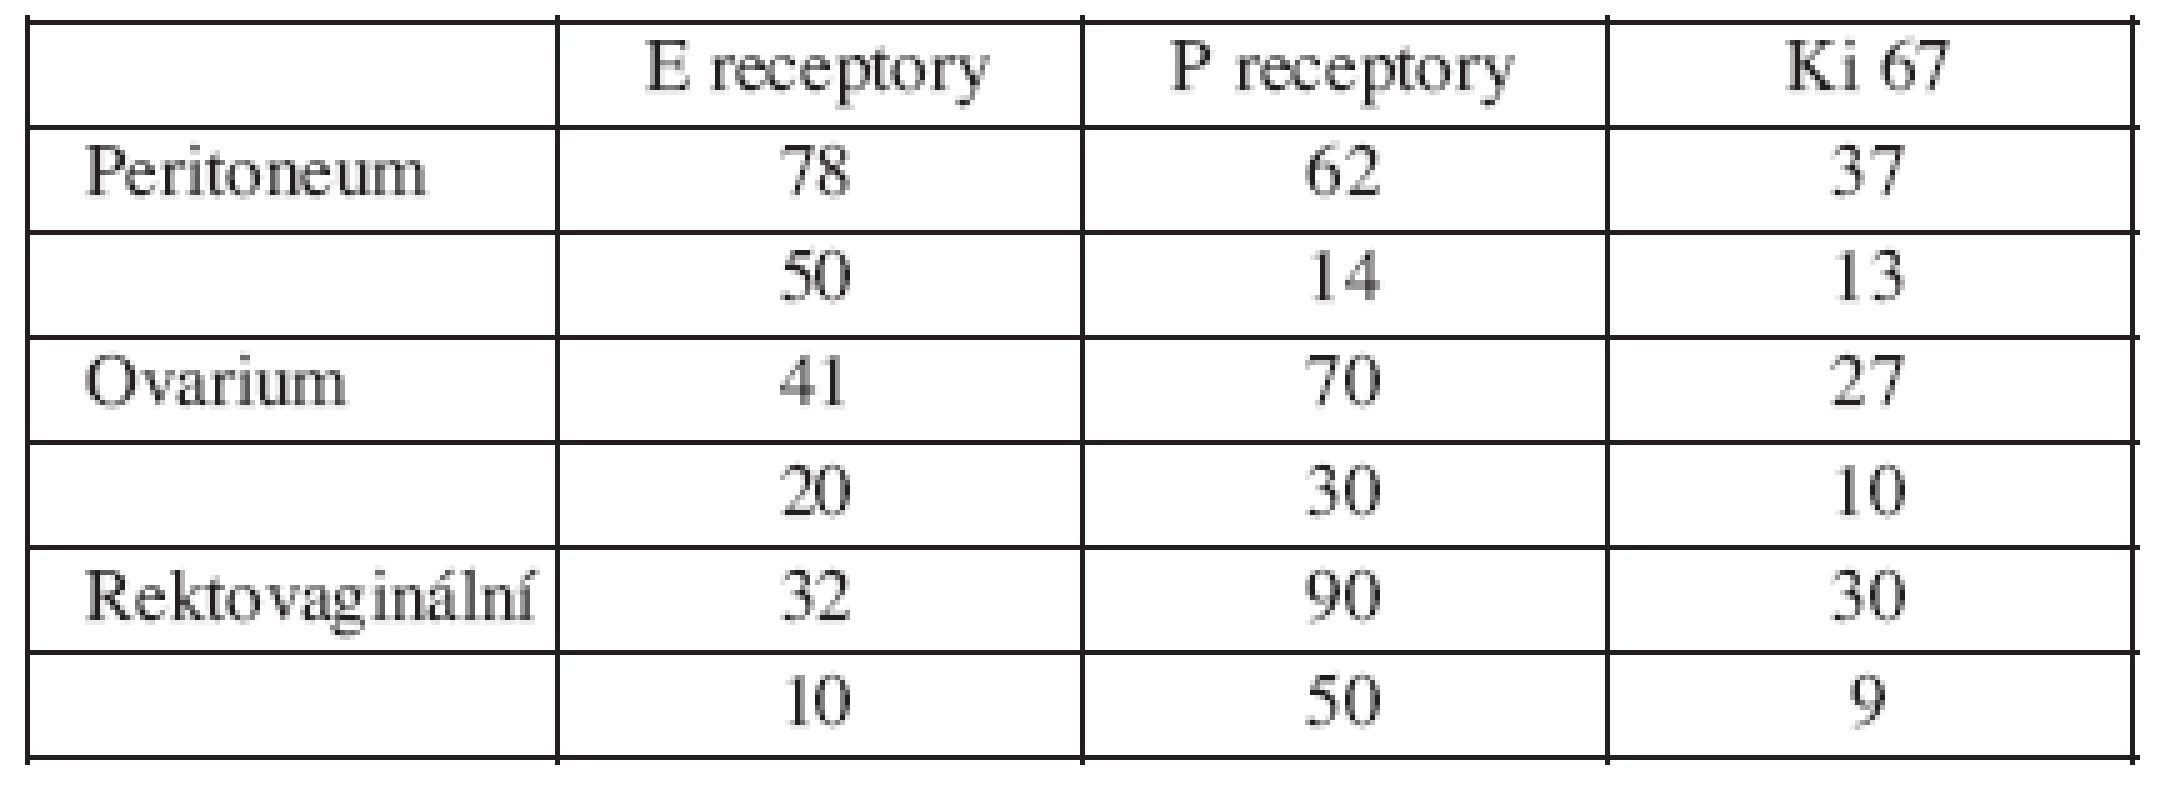 Výsledky biopsie podle lokalizace v procentech žlázové a stromální složky receptorů a aktivity Ki67